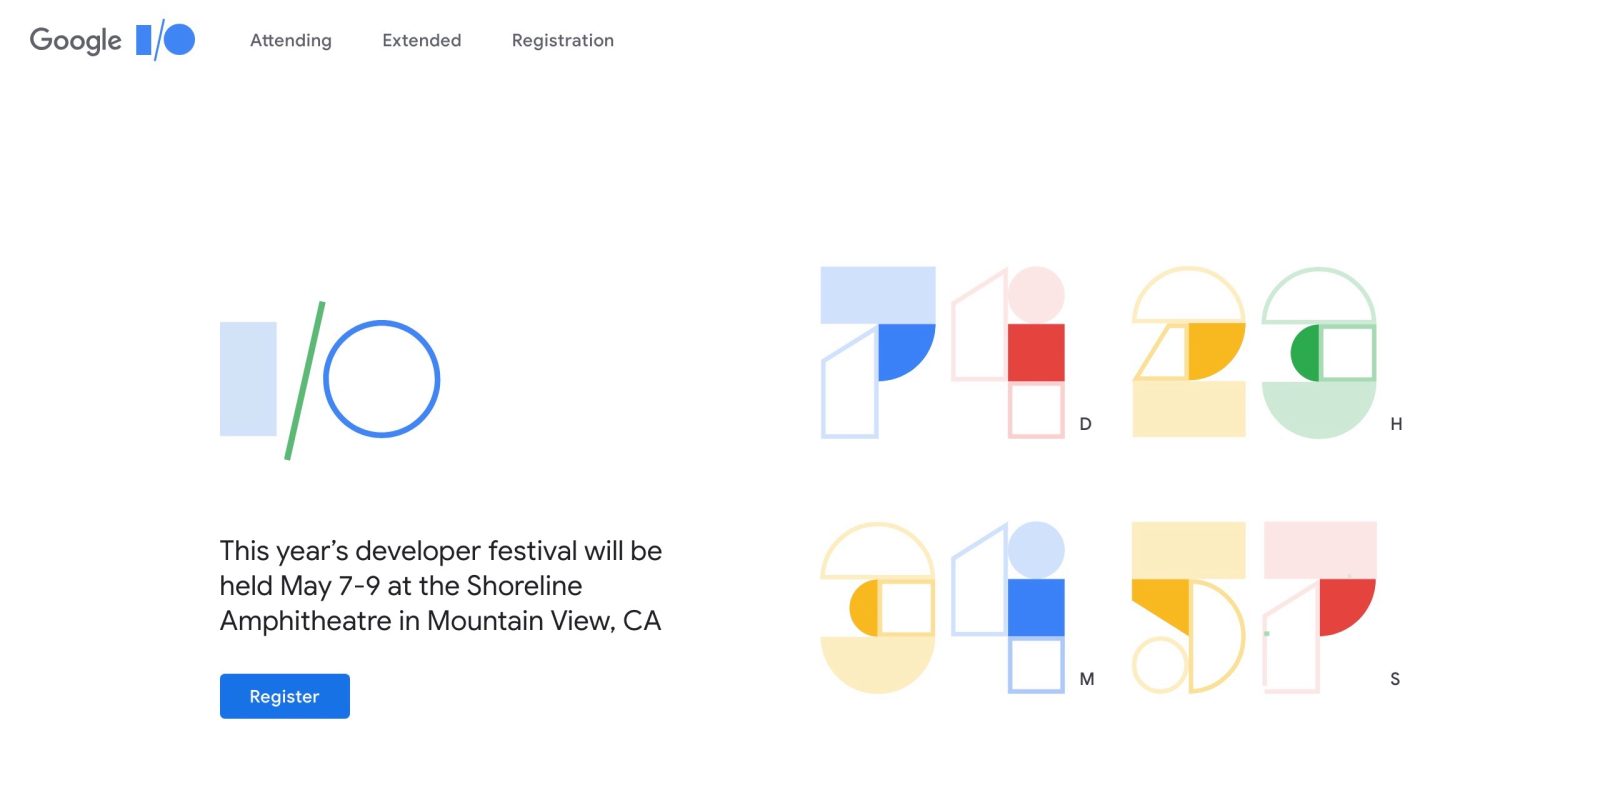 How to Watch Livestream Google I/O 2019 Developer Conference